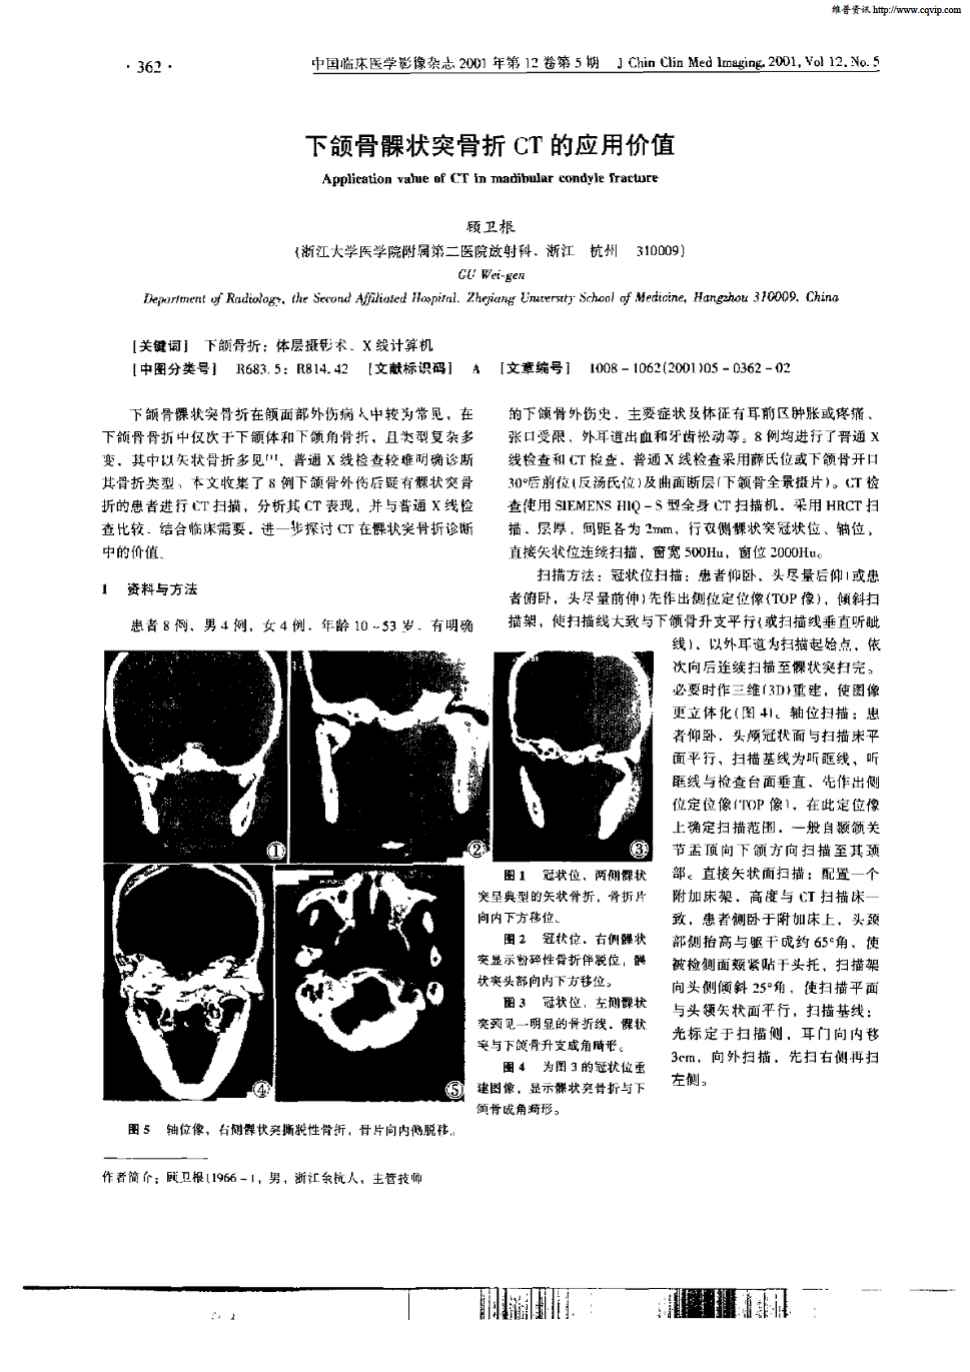 下颌骨髁状突骨折在颌面部外伤病人中较为常见,在下颌骨骨折中仅次于